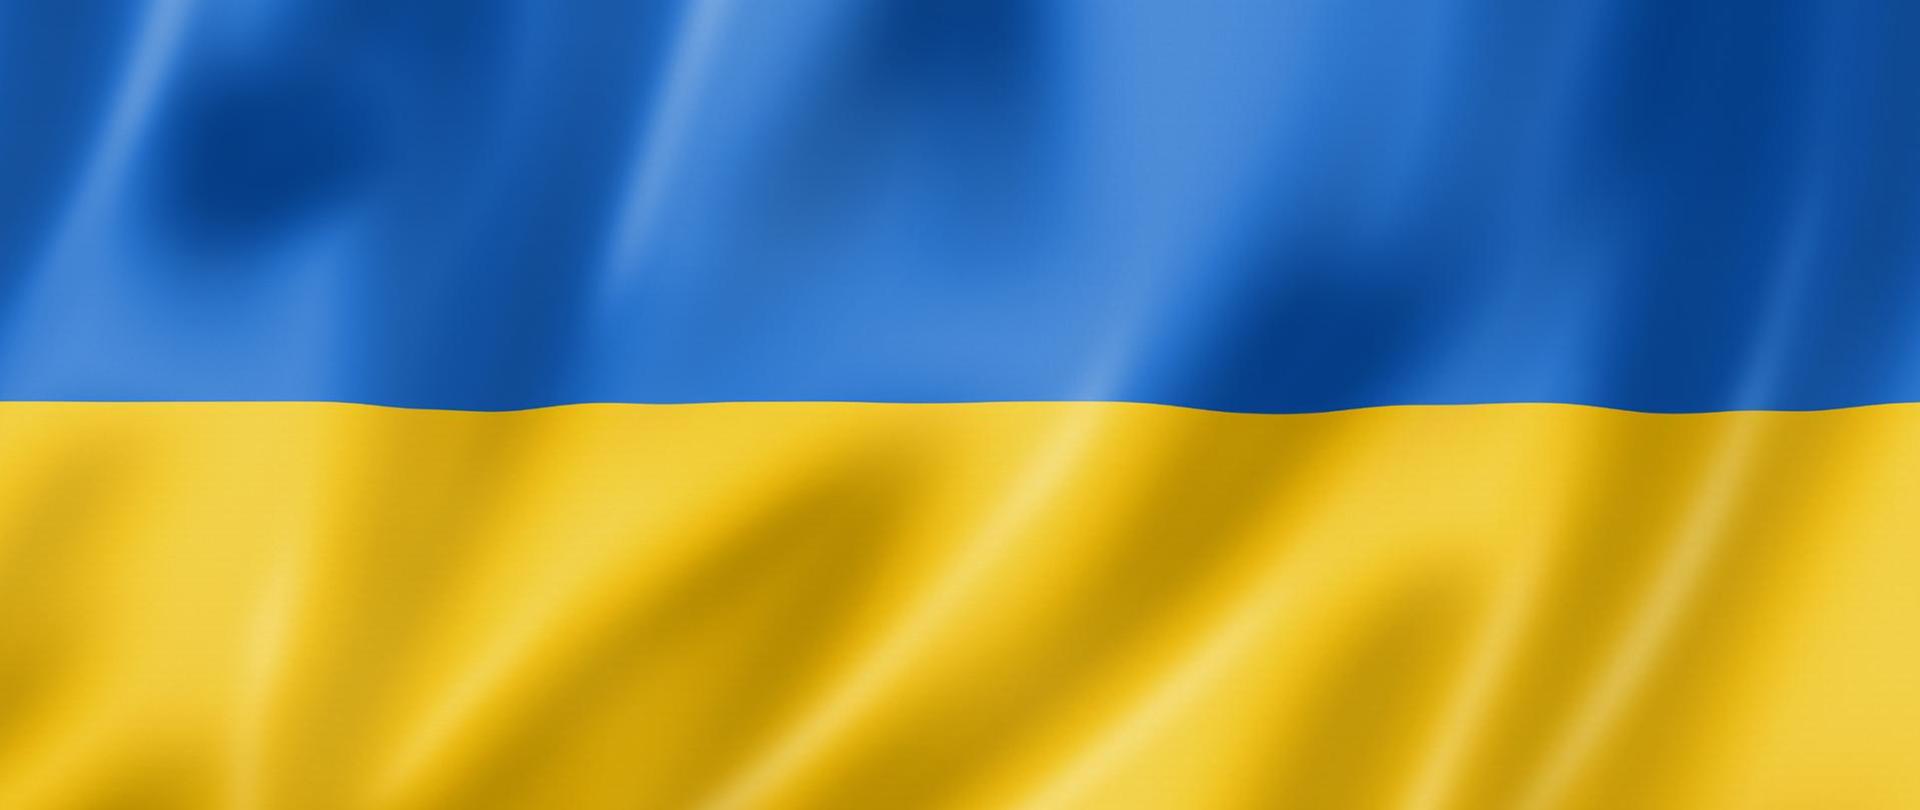 Zdjęcie przedstawia flagę Ukrainy. Flaga jest dwu kolorowa. Od góry do połowy jest kolor niebieski, druga połowa flagi jest w kolorze żółtym.